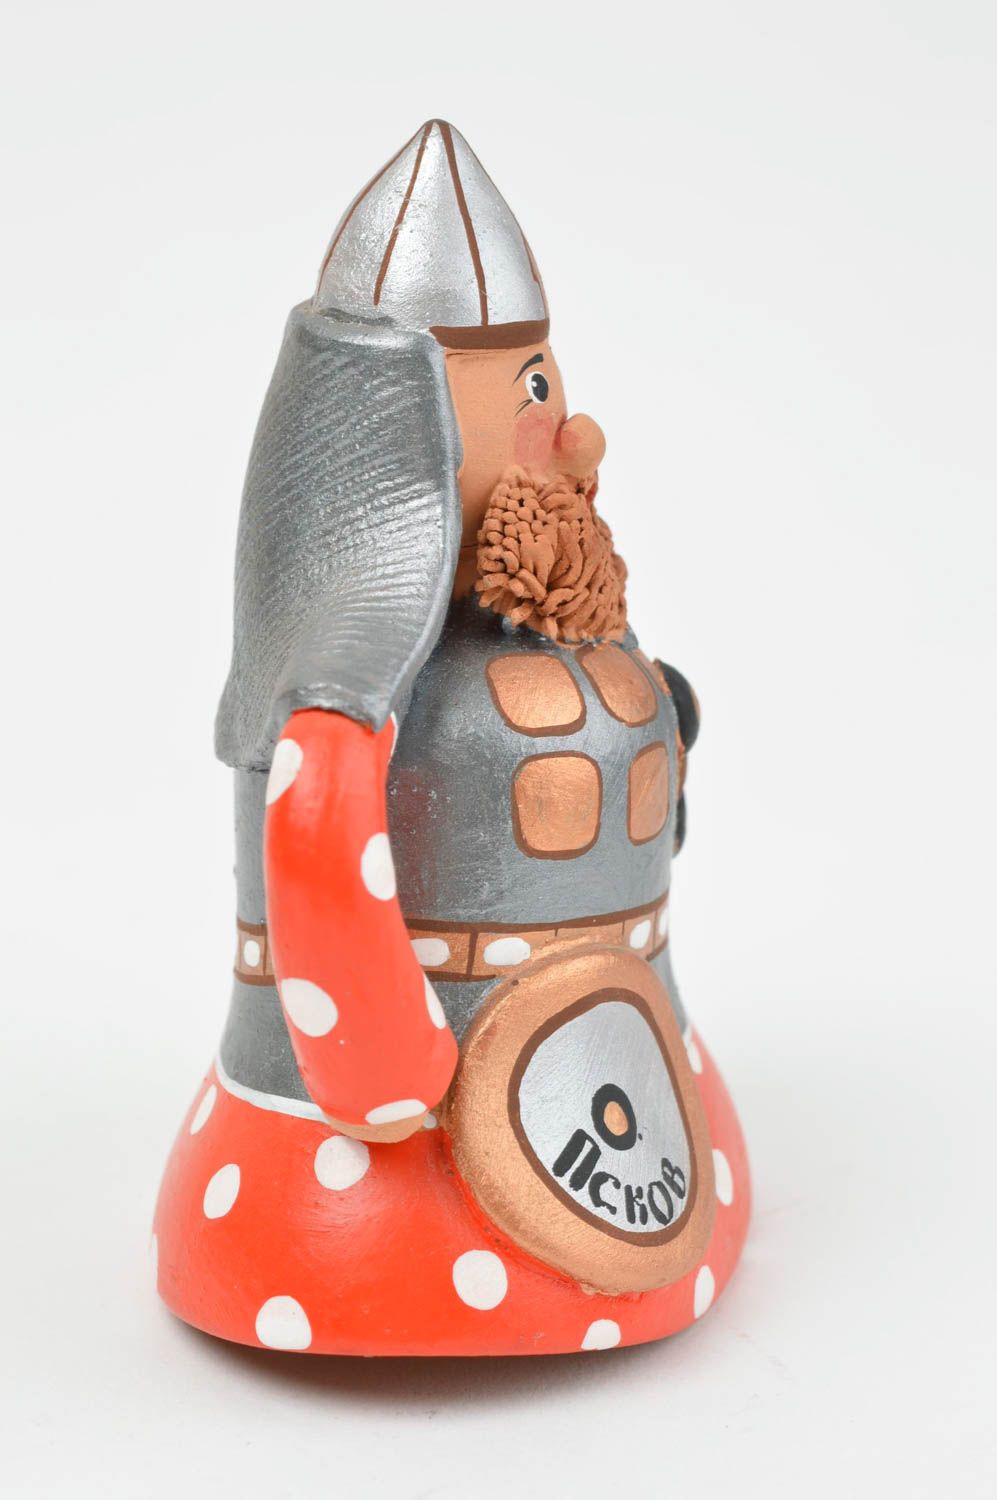 Глиняный колокольчик в виде рыцаря расписанный красками ручной работы красивый фото 2